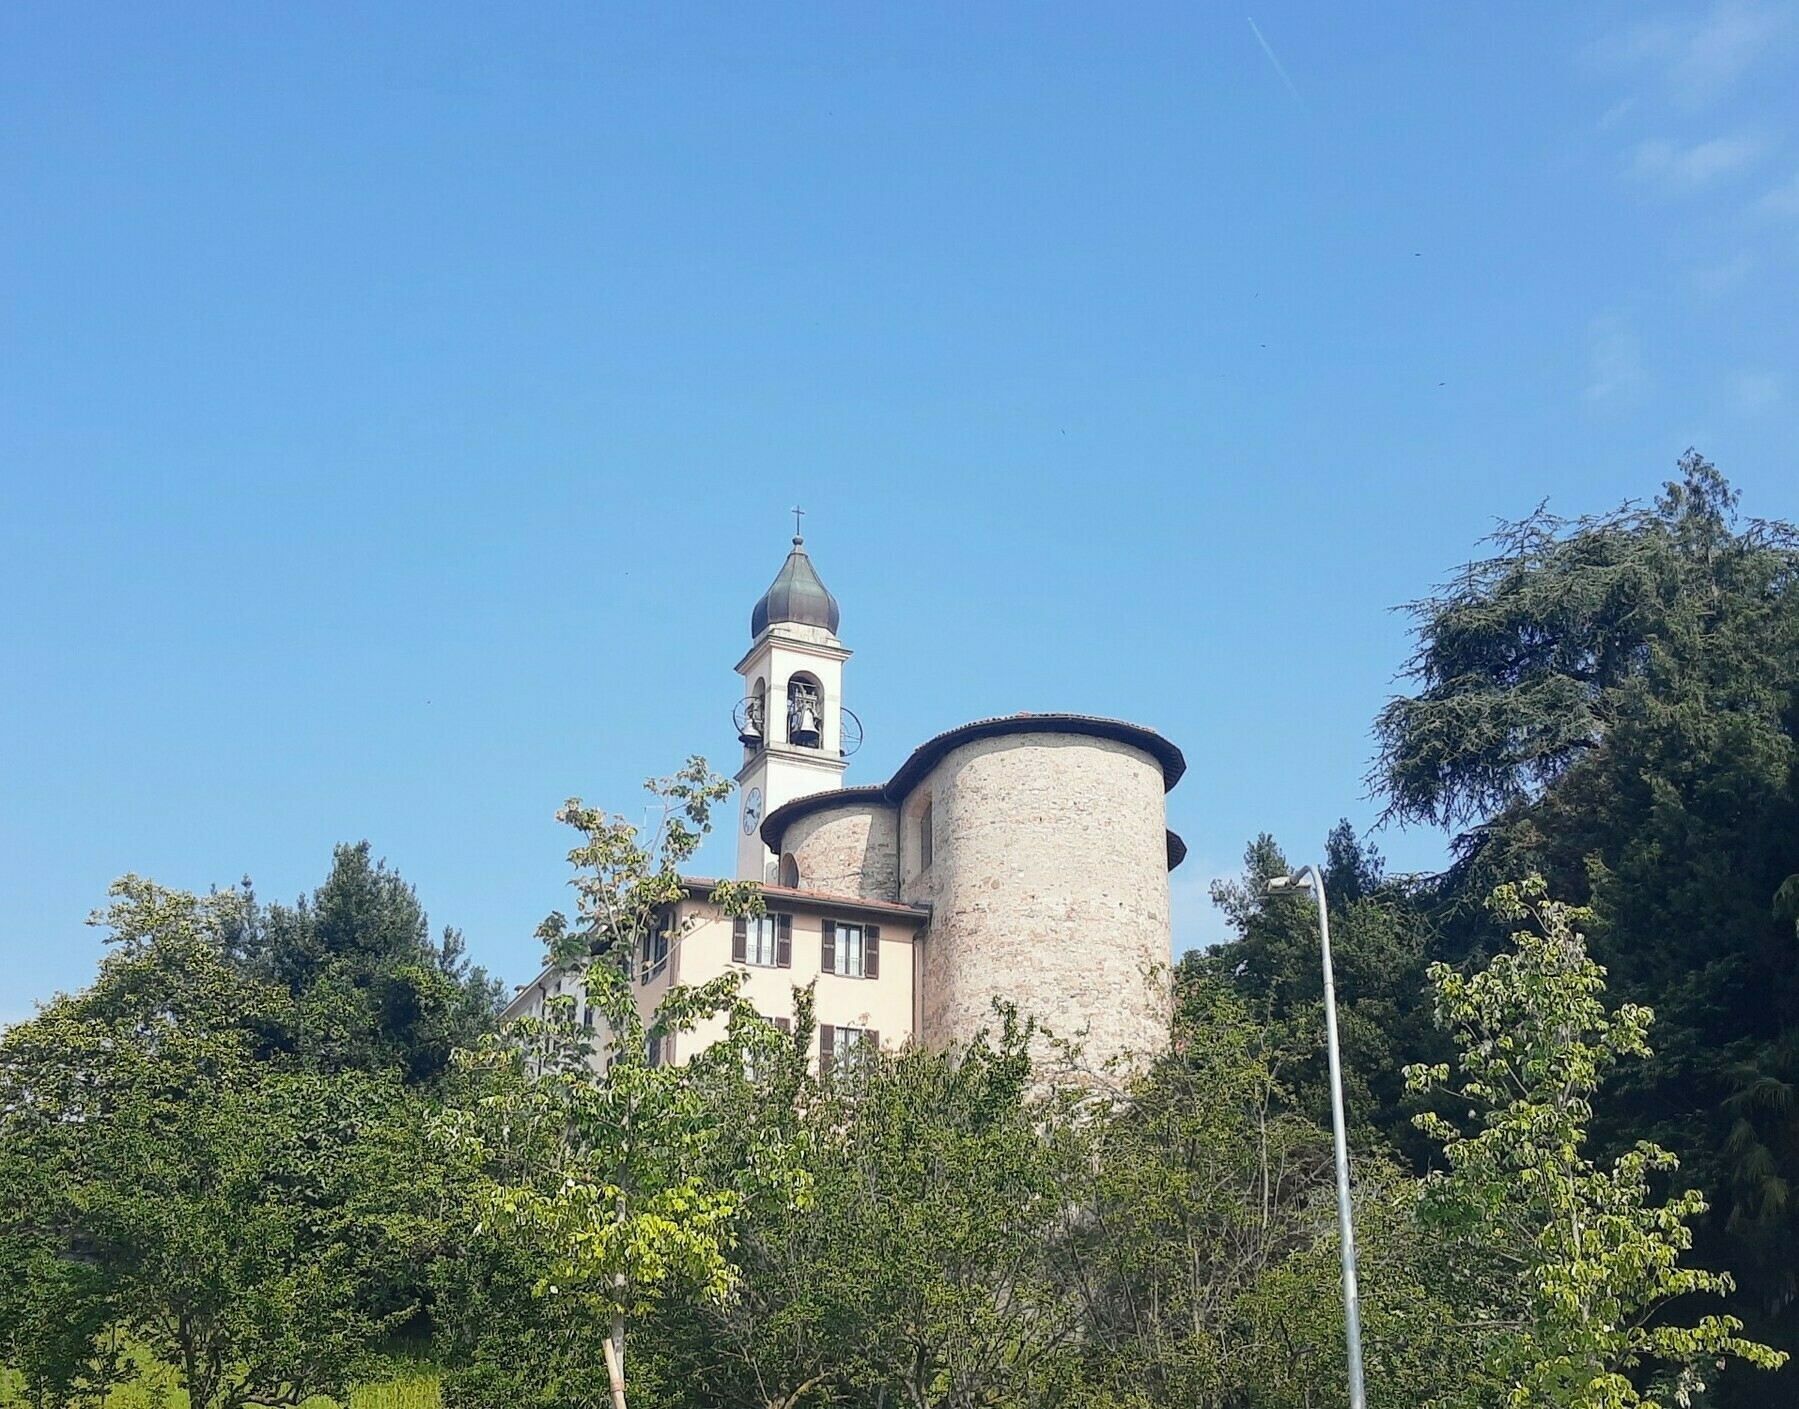 Church of Saint Cosma and Damiano, Villaguardia - Italy